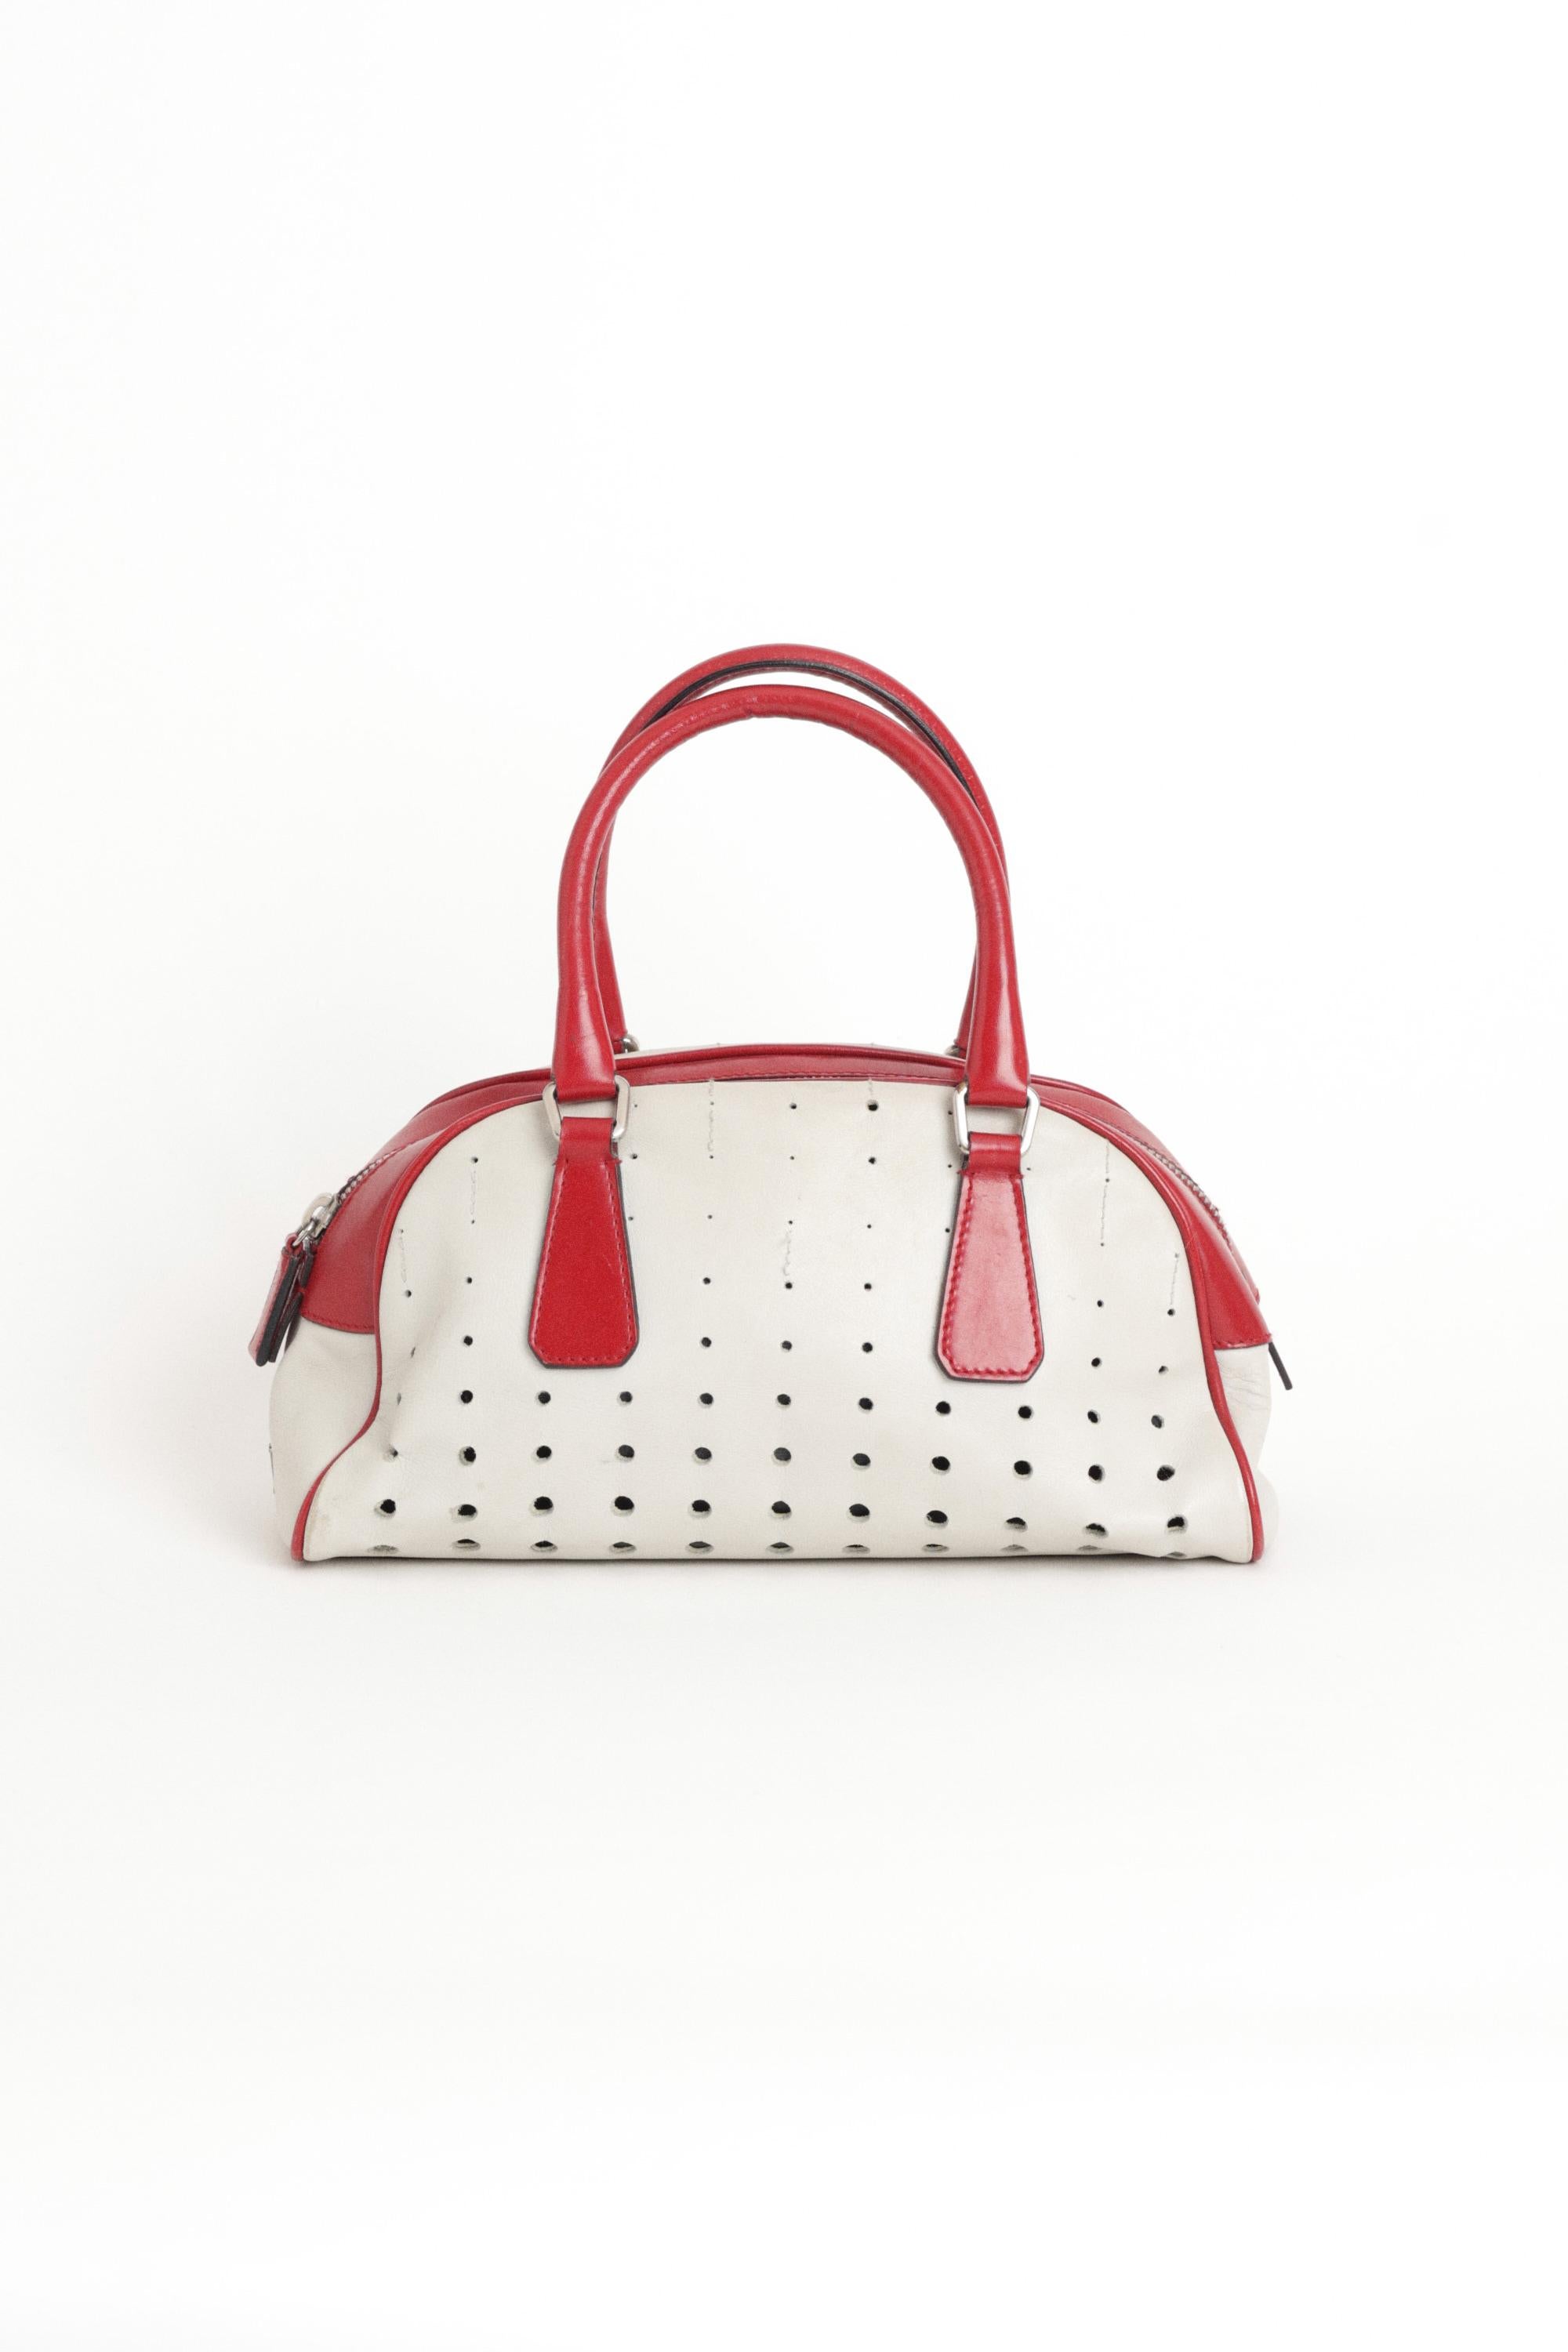 Prada 2000's rot-weiße Bowlingtasche zum Sammeln. Mit perforiertem Design, Innenfach mit Reißverschluss und Reißverschluss. In gutem Vintage-Zustand, das Futter löst sich von der Innenseite.  Sie wurde zu einer der zehn kultigsten Handtaschen aller